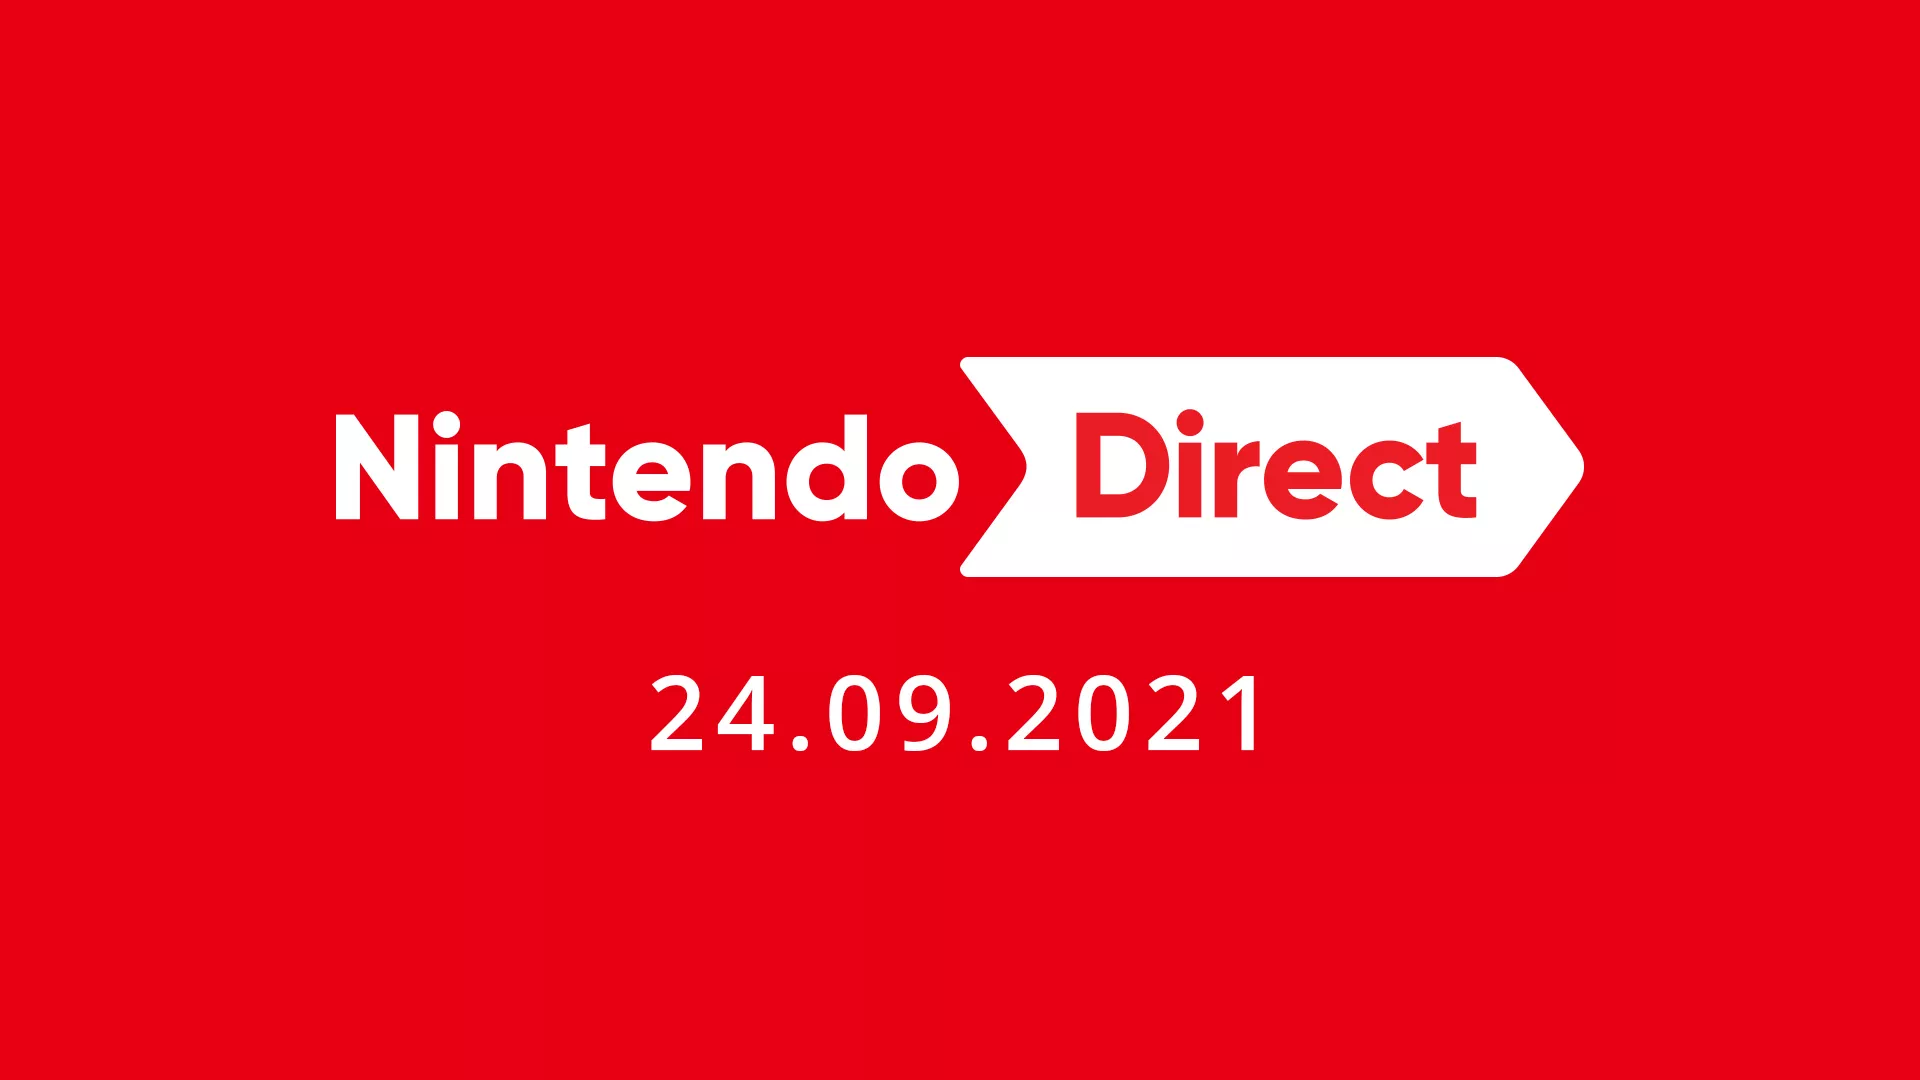 Nintendo Direct für die Nacht zum Freitag angekündigt Heropic